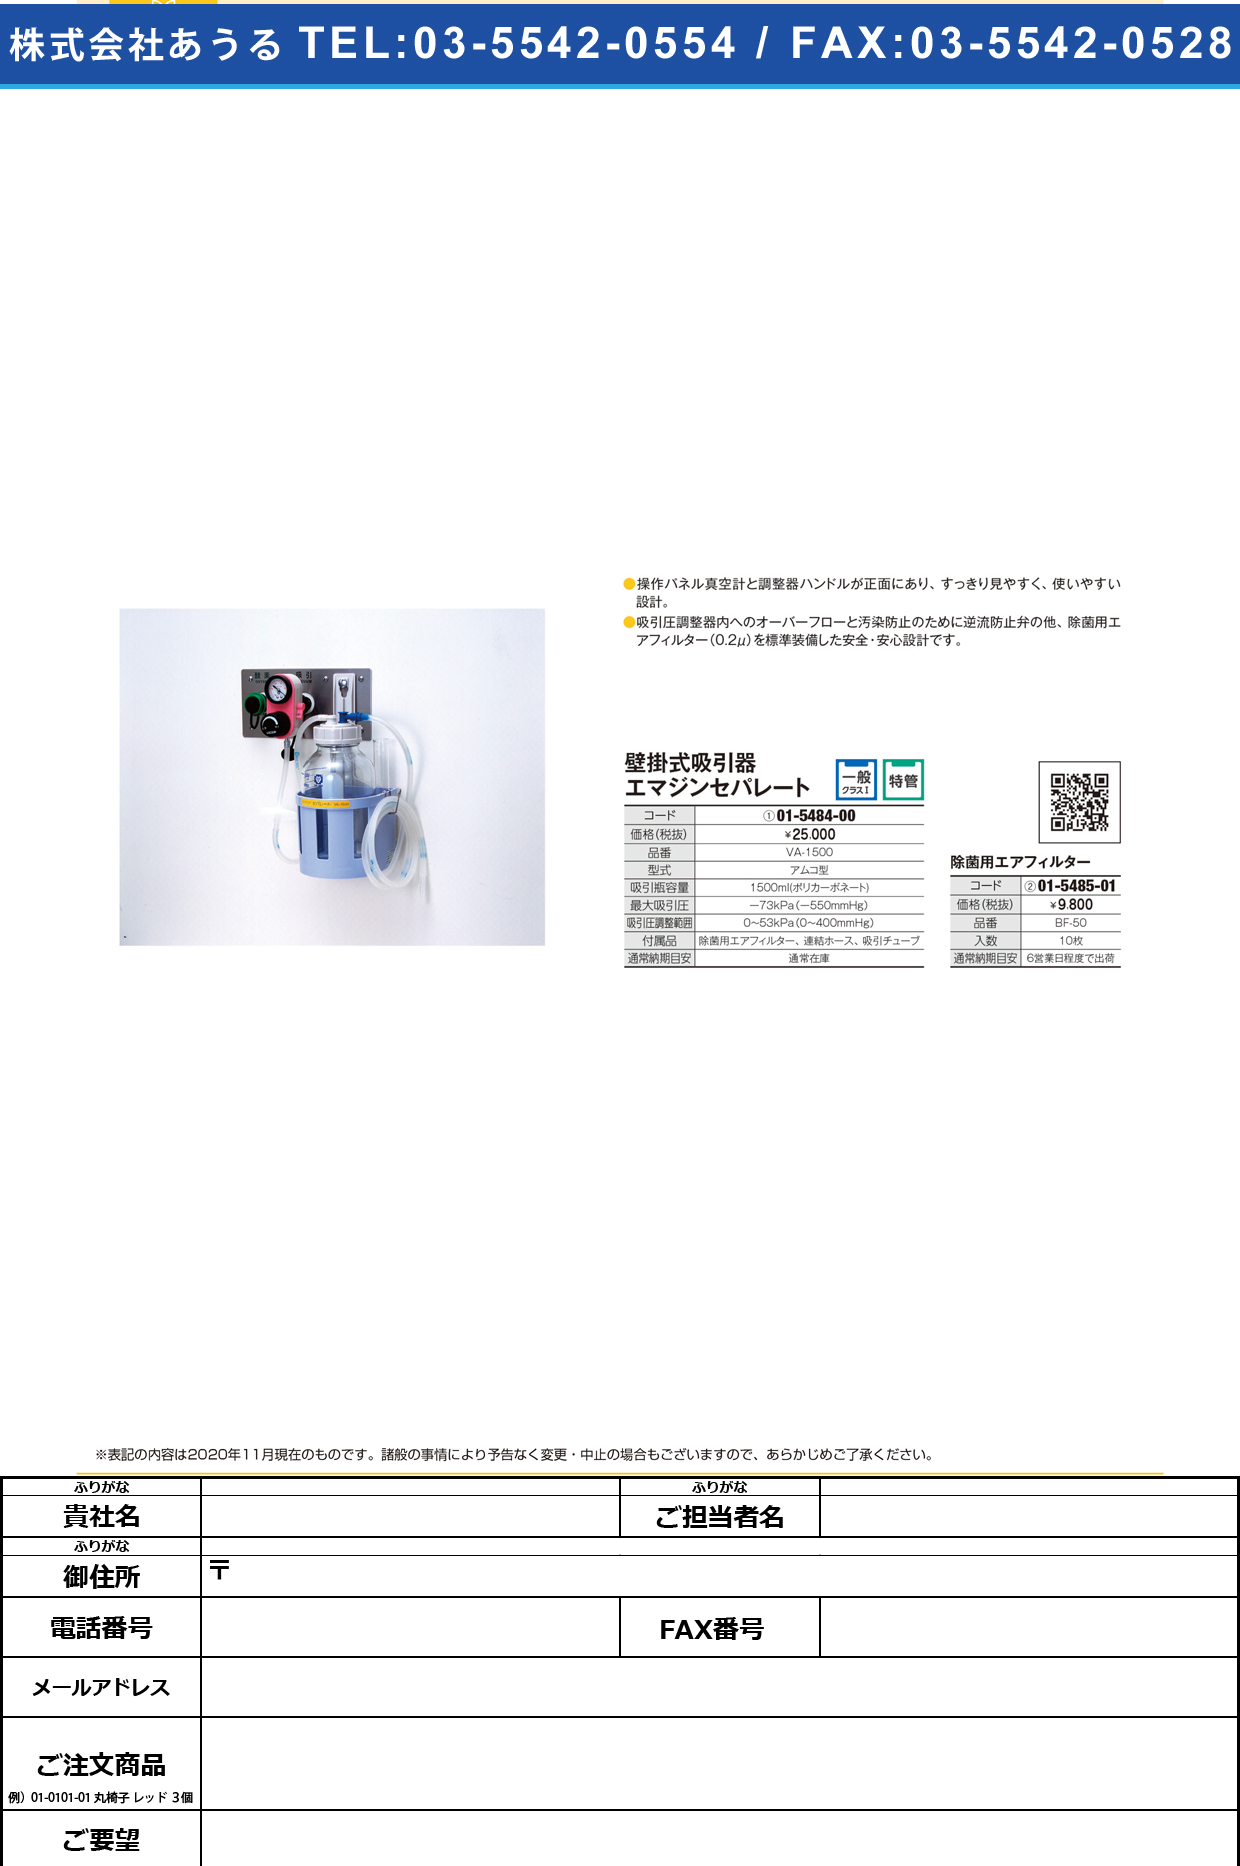 エマジン壁掛式吸引器 セパレート VA-1500VA-1500Ａ：アムコ型(01-5484-00-02)【ブルークロス・エマージェンシー】(販売単位:1)